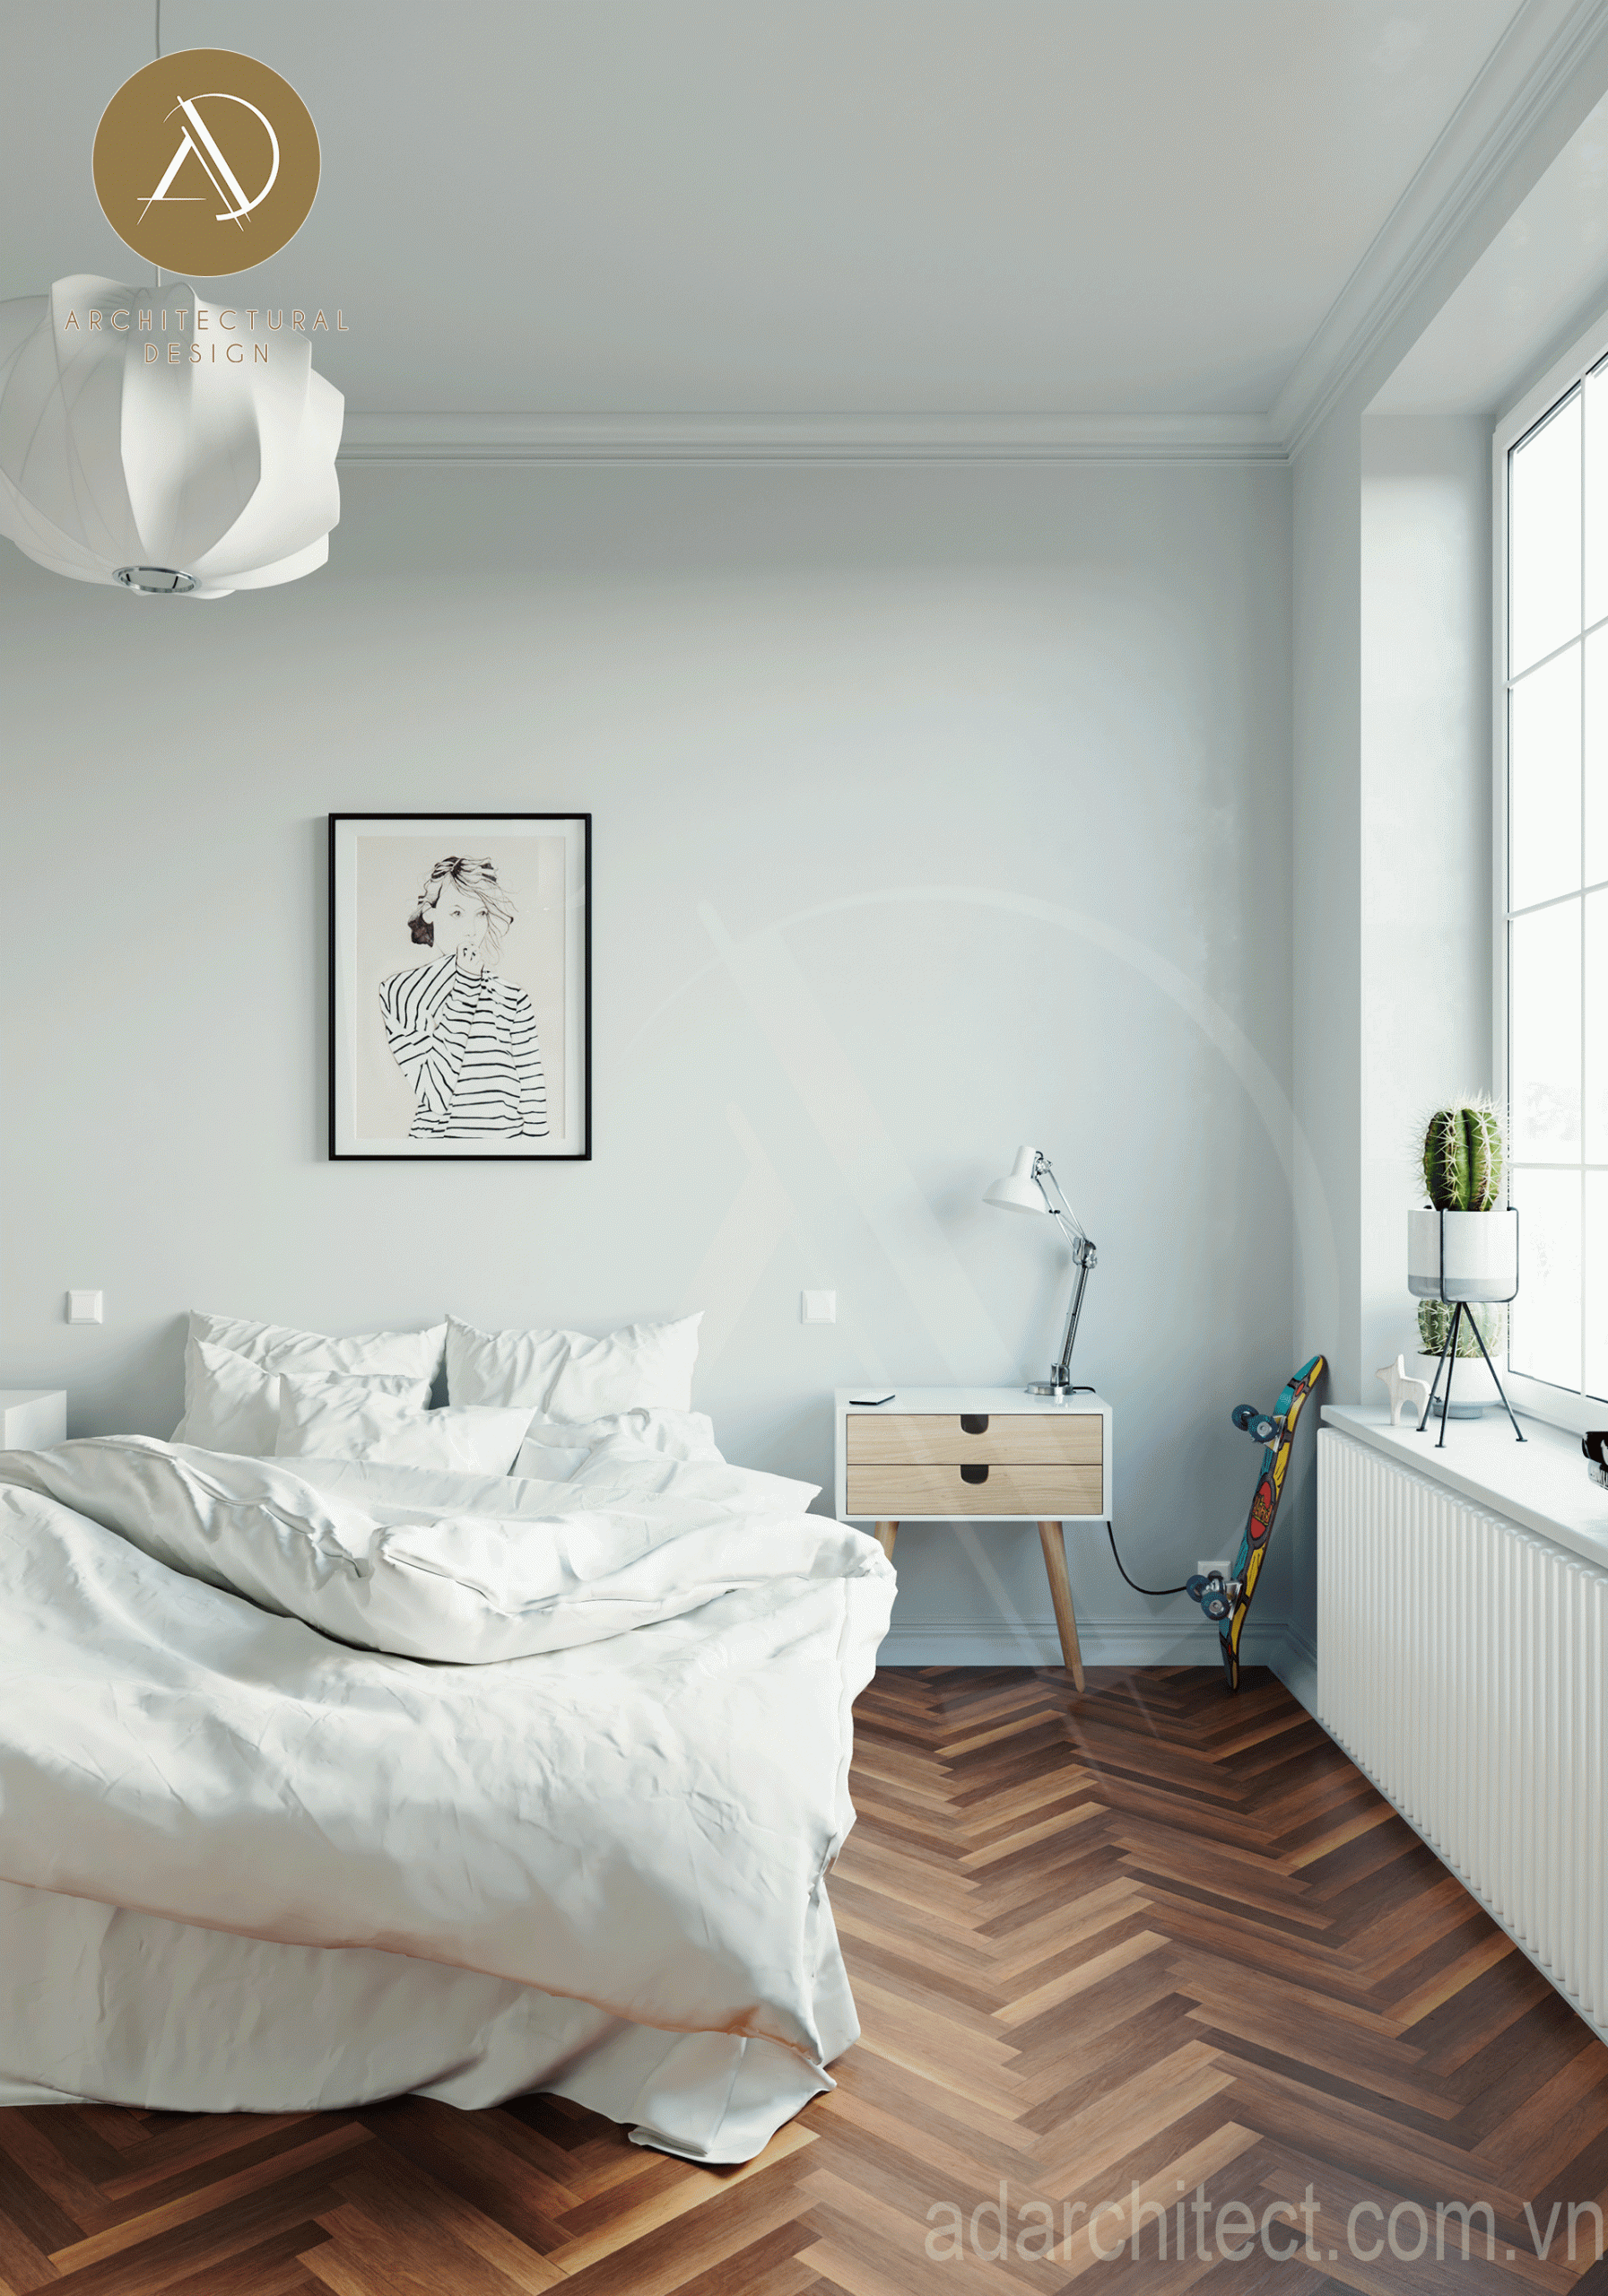 Tông trắng cho phòng ngủ đẹp nhỏ gọn có nội thất tiện nghi hiện đại